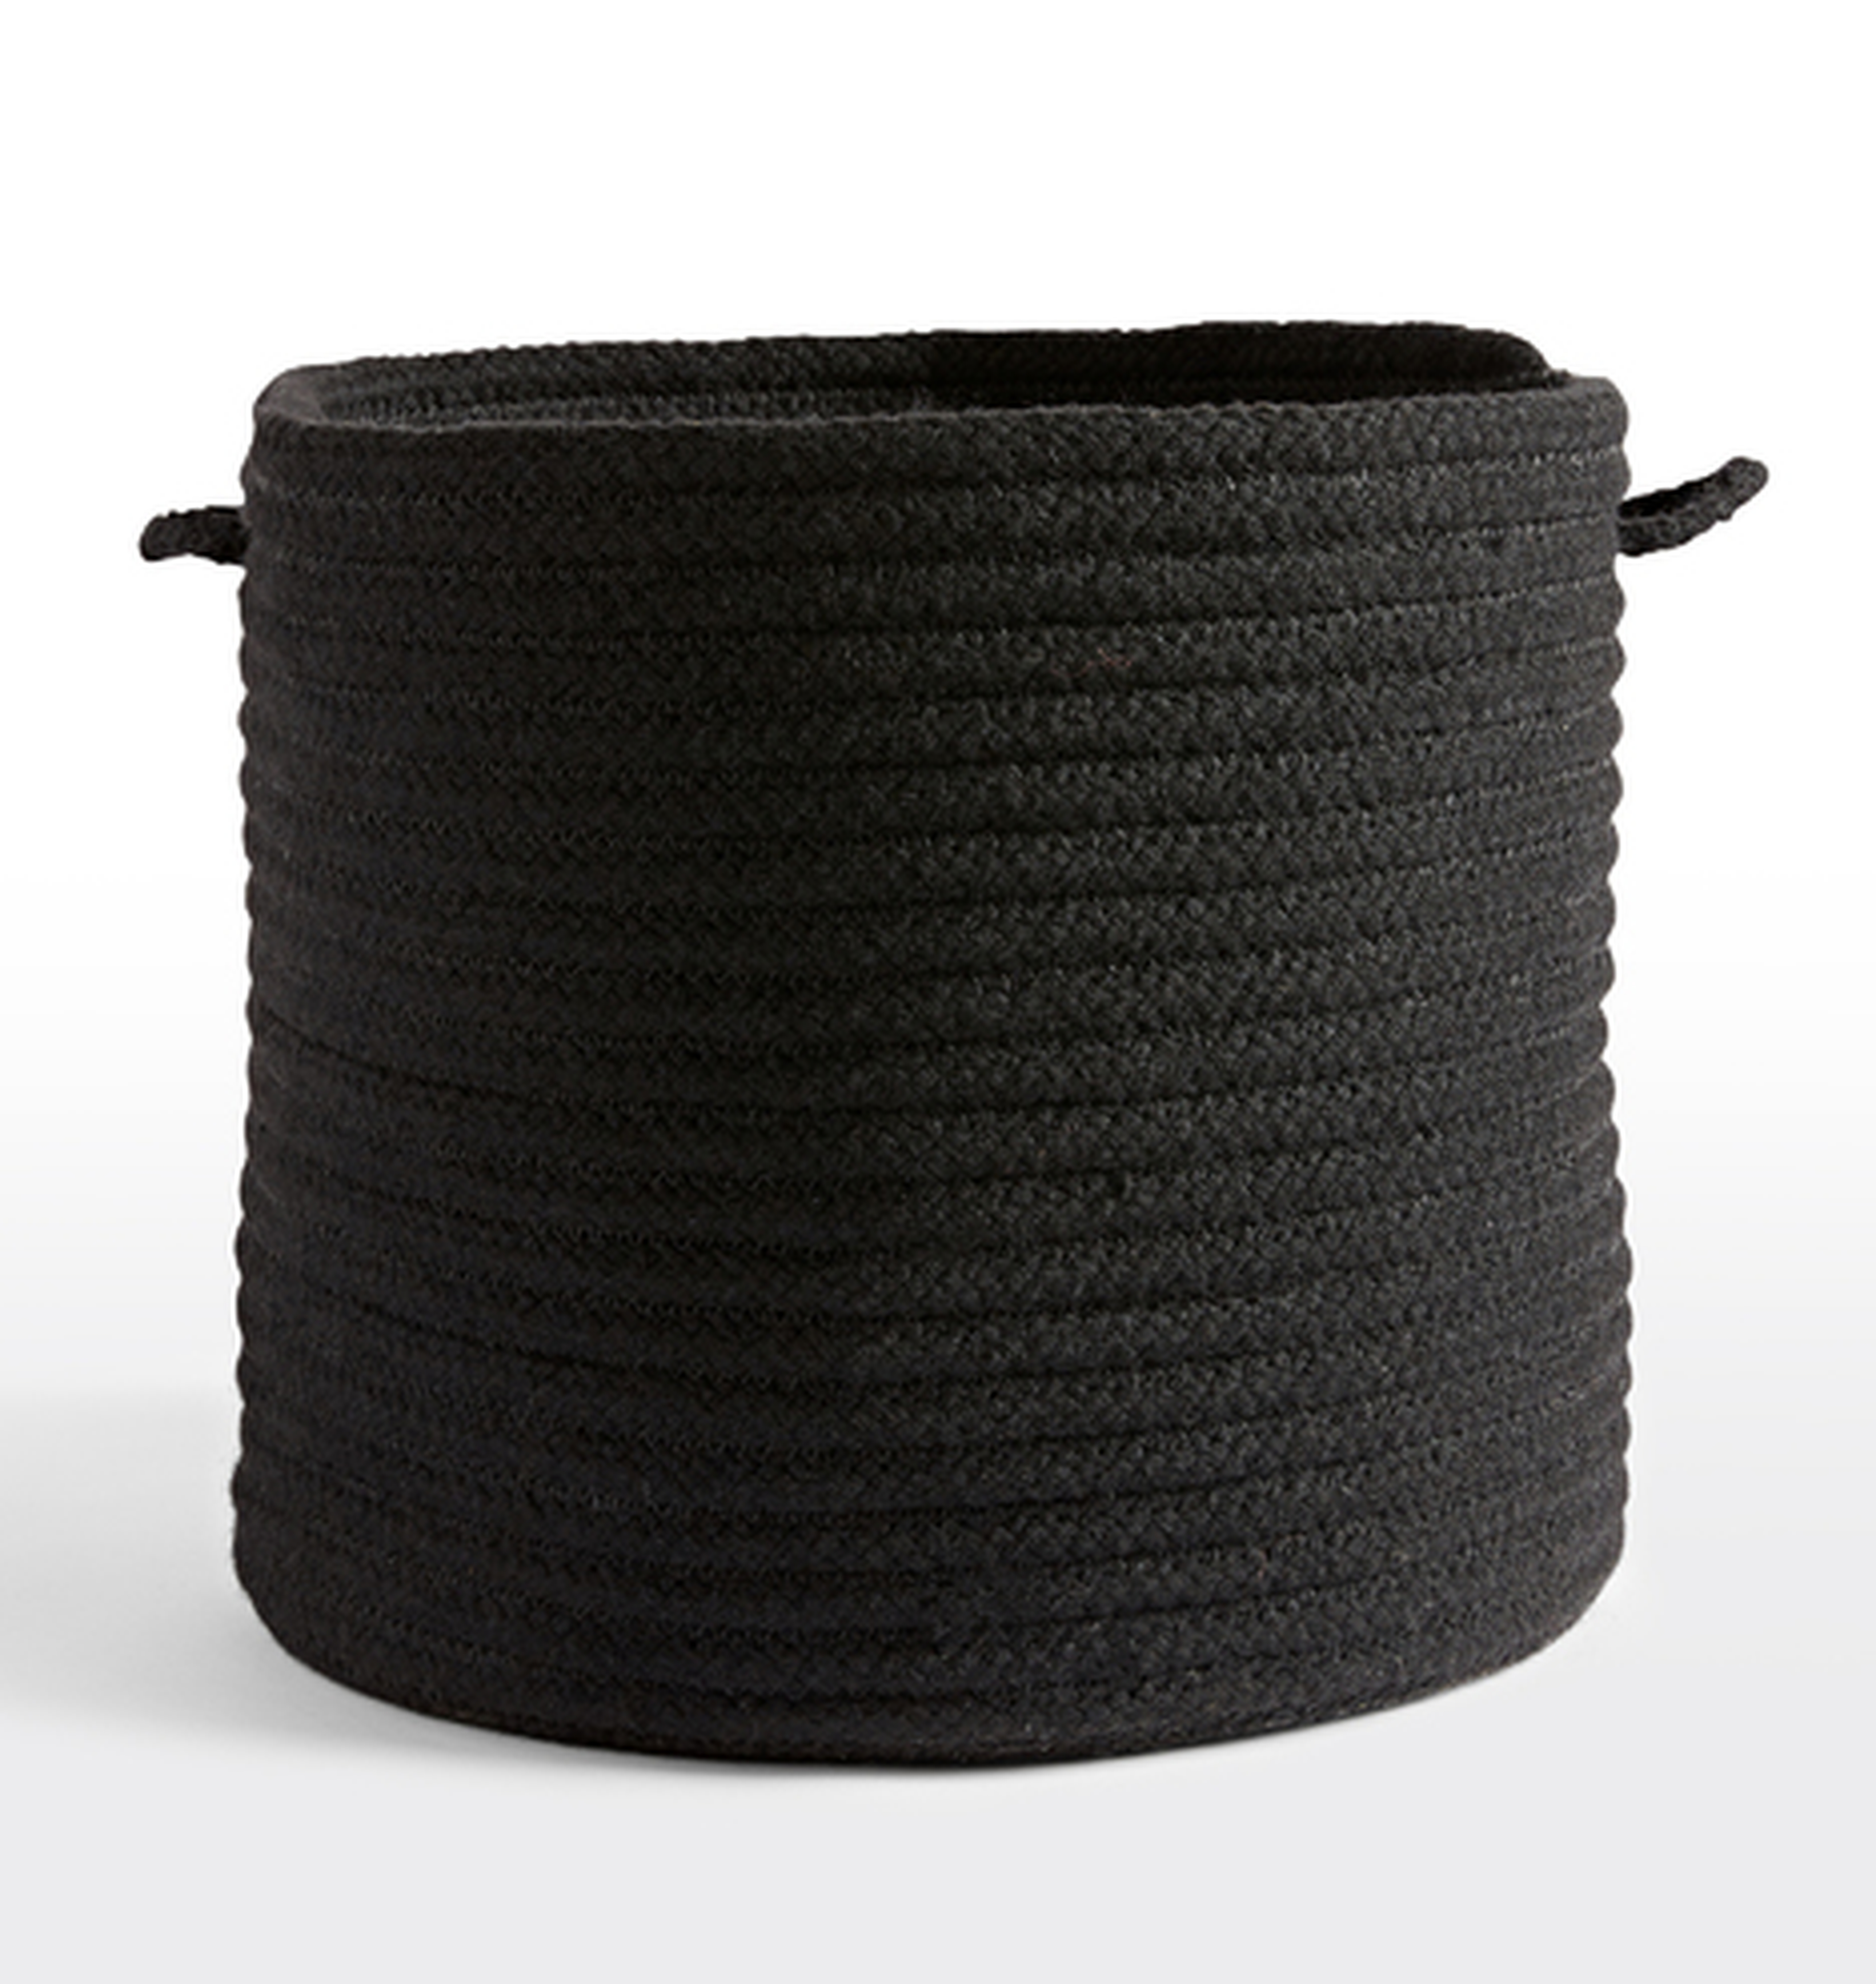 Cablelock Wool Basket - Rejuvenation